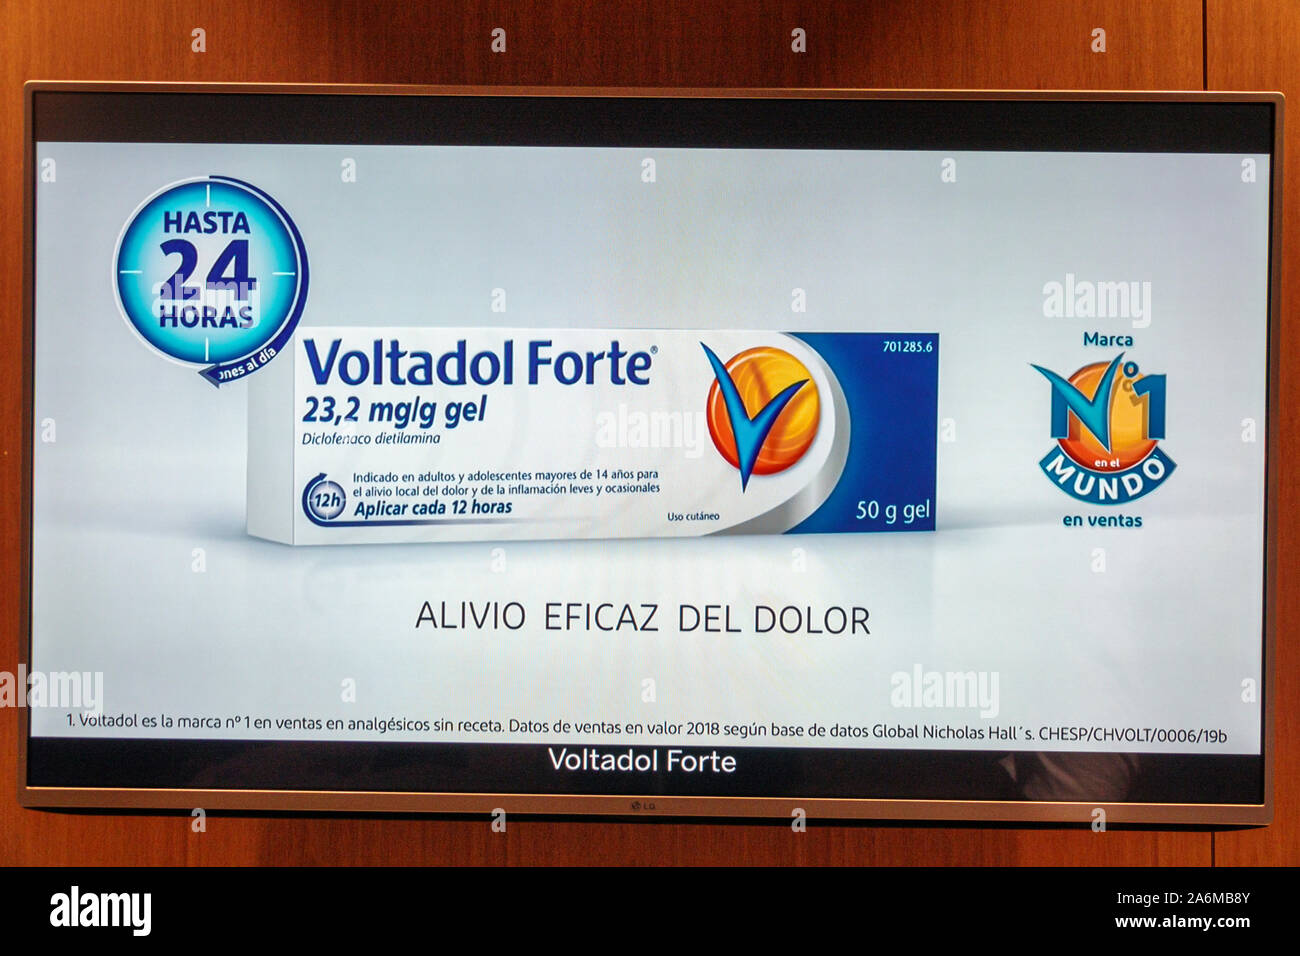 Barcelona España,Cataluña pantalla,anuncio publicitario Forte,Voltaren Gel,di Fotografía de stock - Alamy